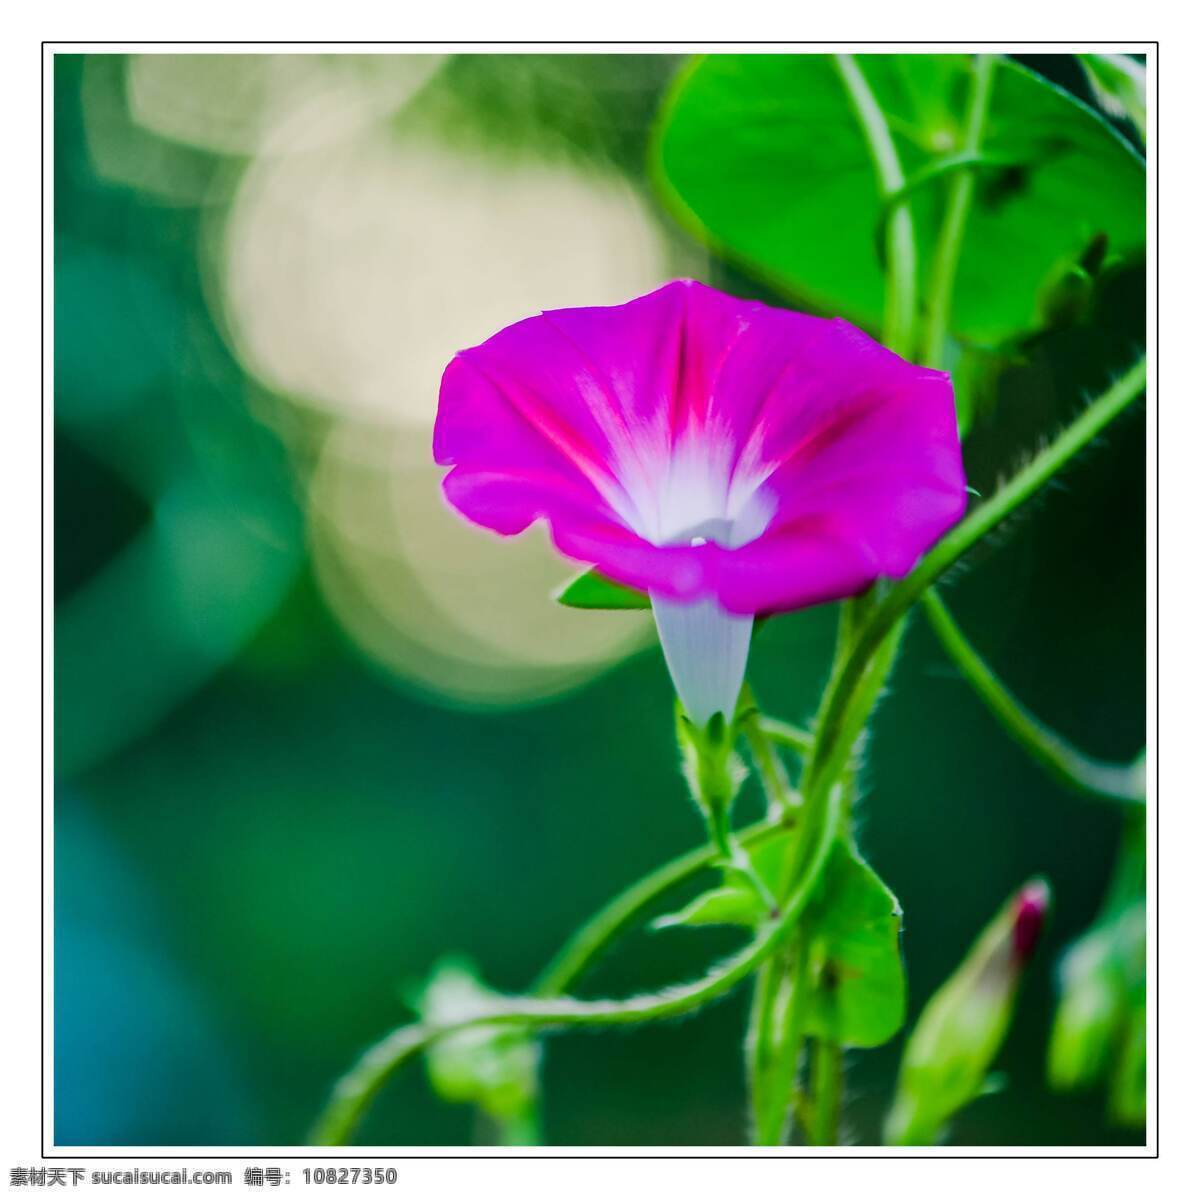 喇叭花 花 植物 春天 魅力 绽放 紫色 喇叭 自然景观 自然风景